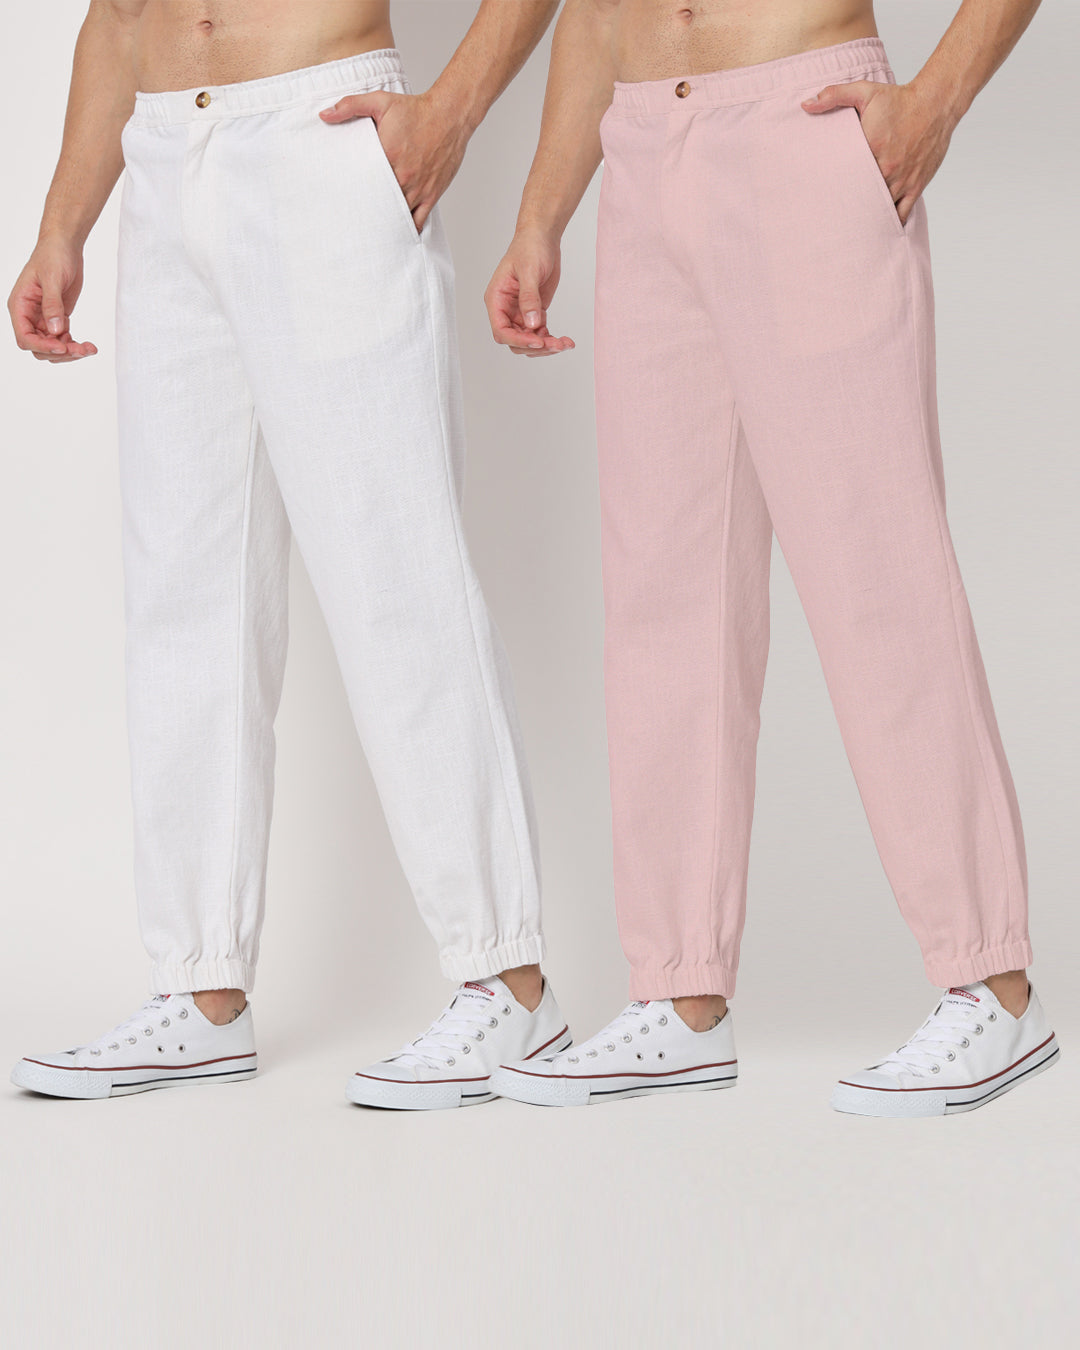 Combo: White & Fondant Pink Jog Men's Pants - Set of 2